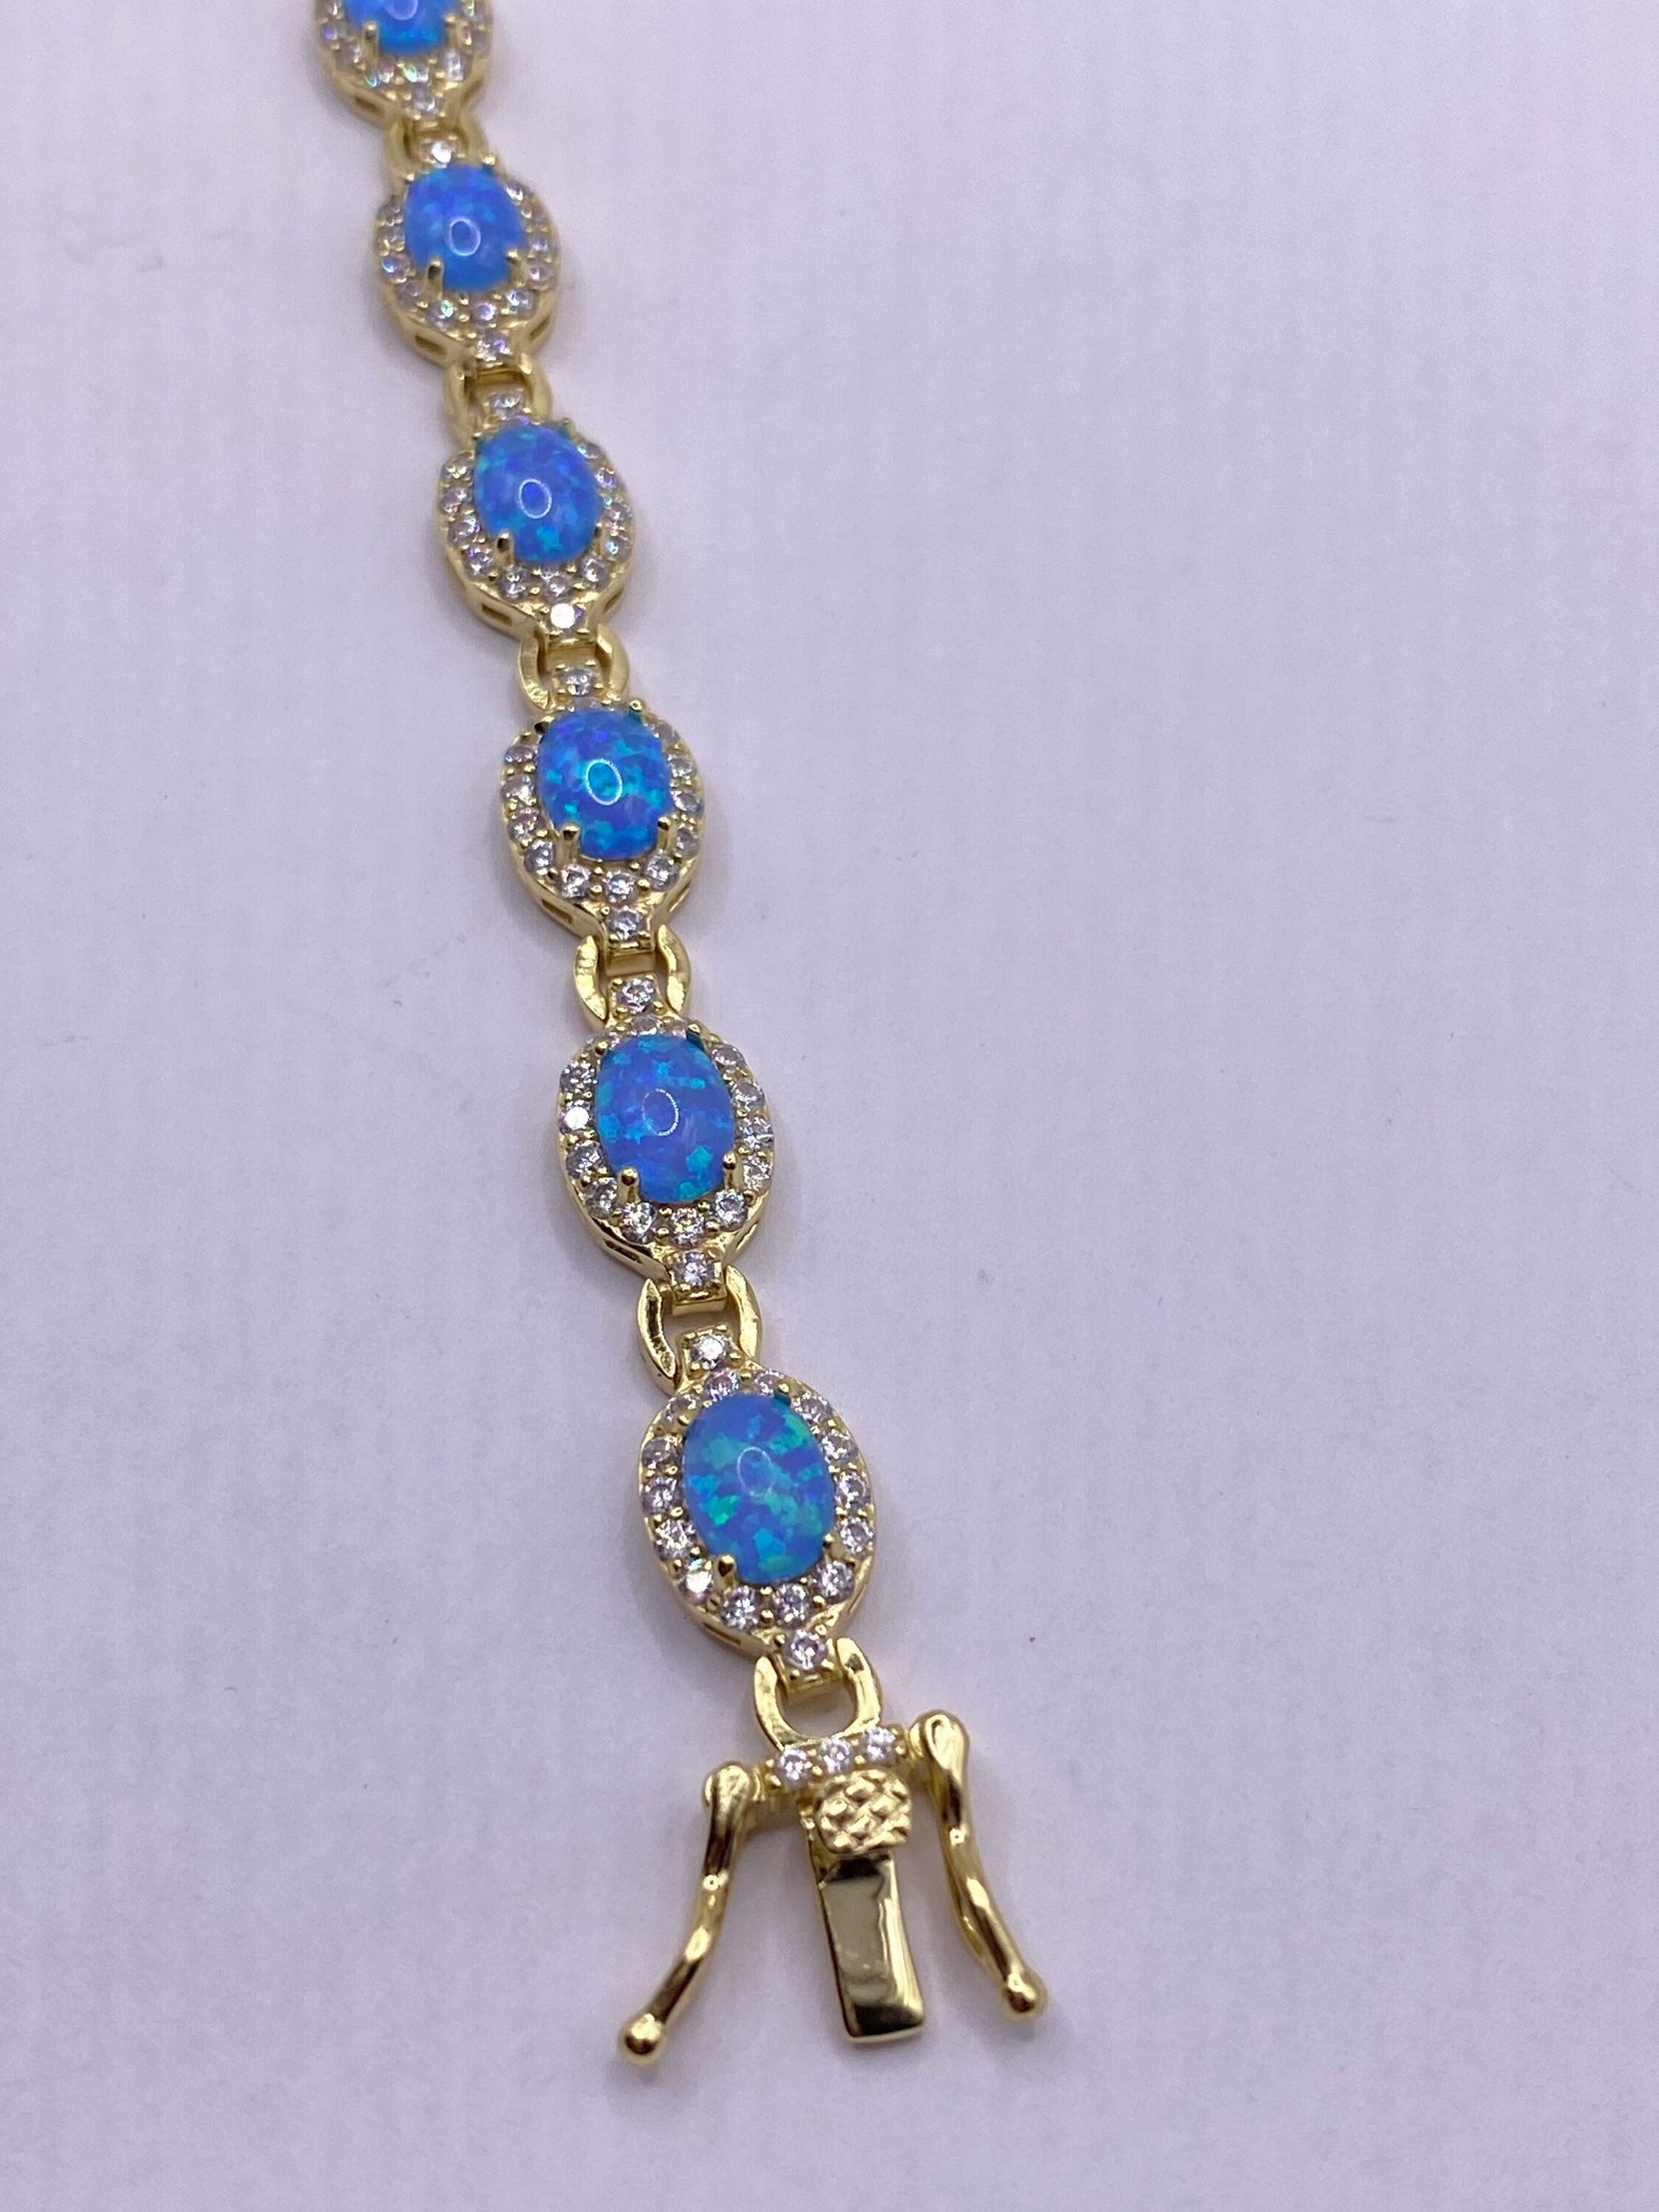 Vintage Blue Fire Opal Cubic Zirconia Bracelet 925 Sterling Silver